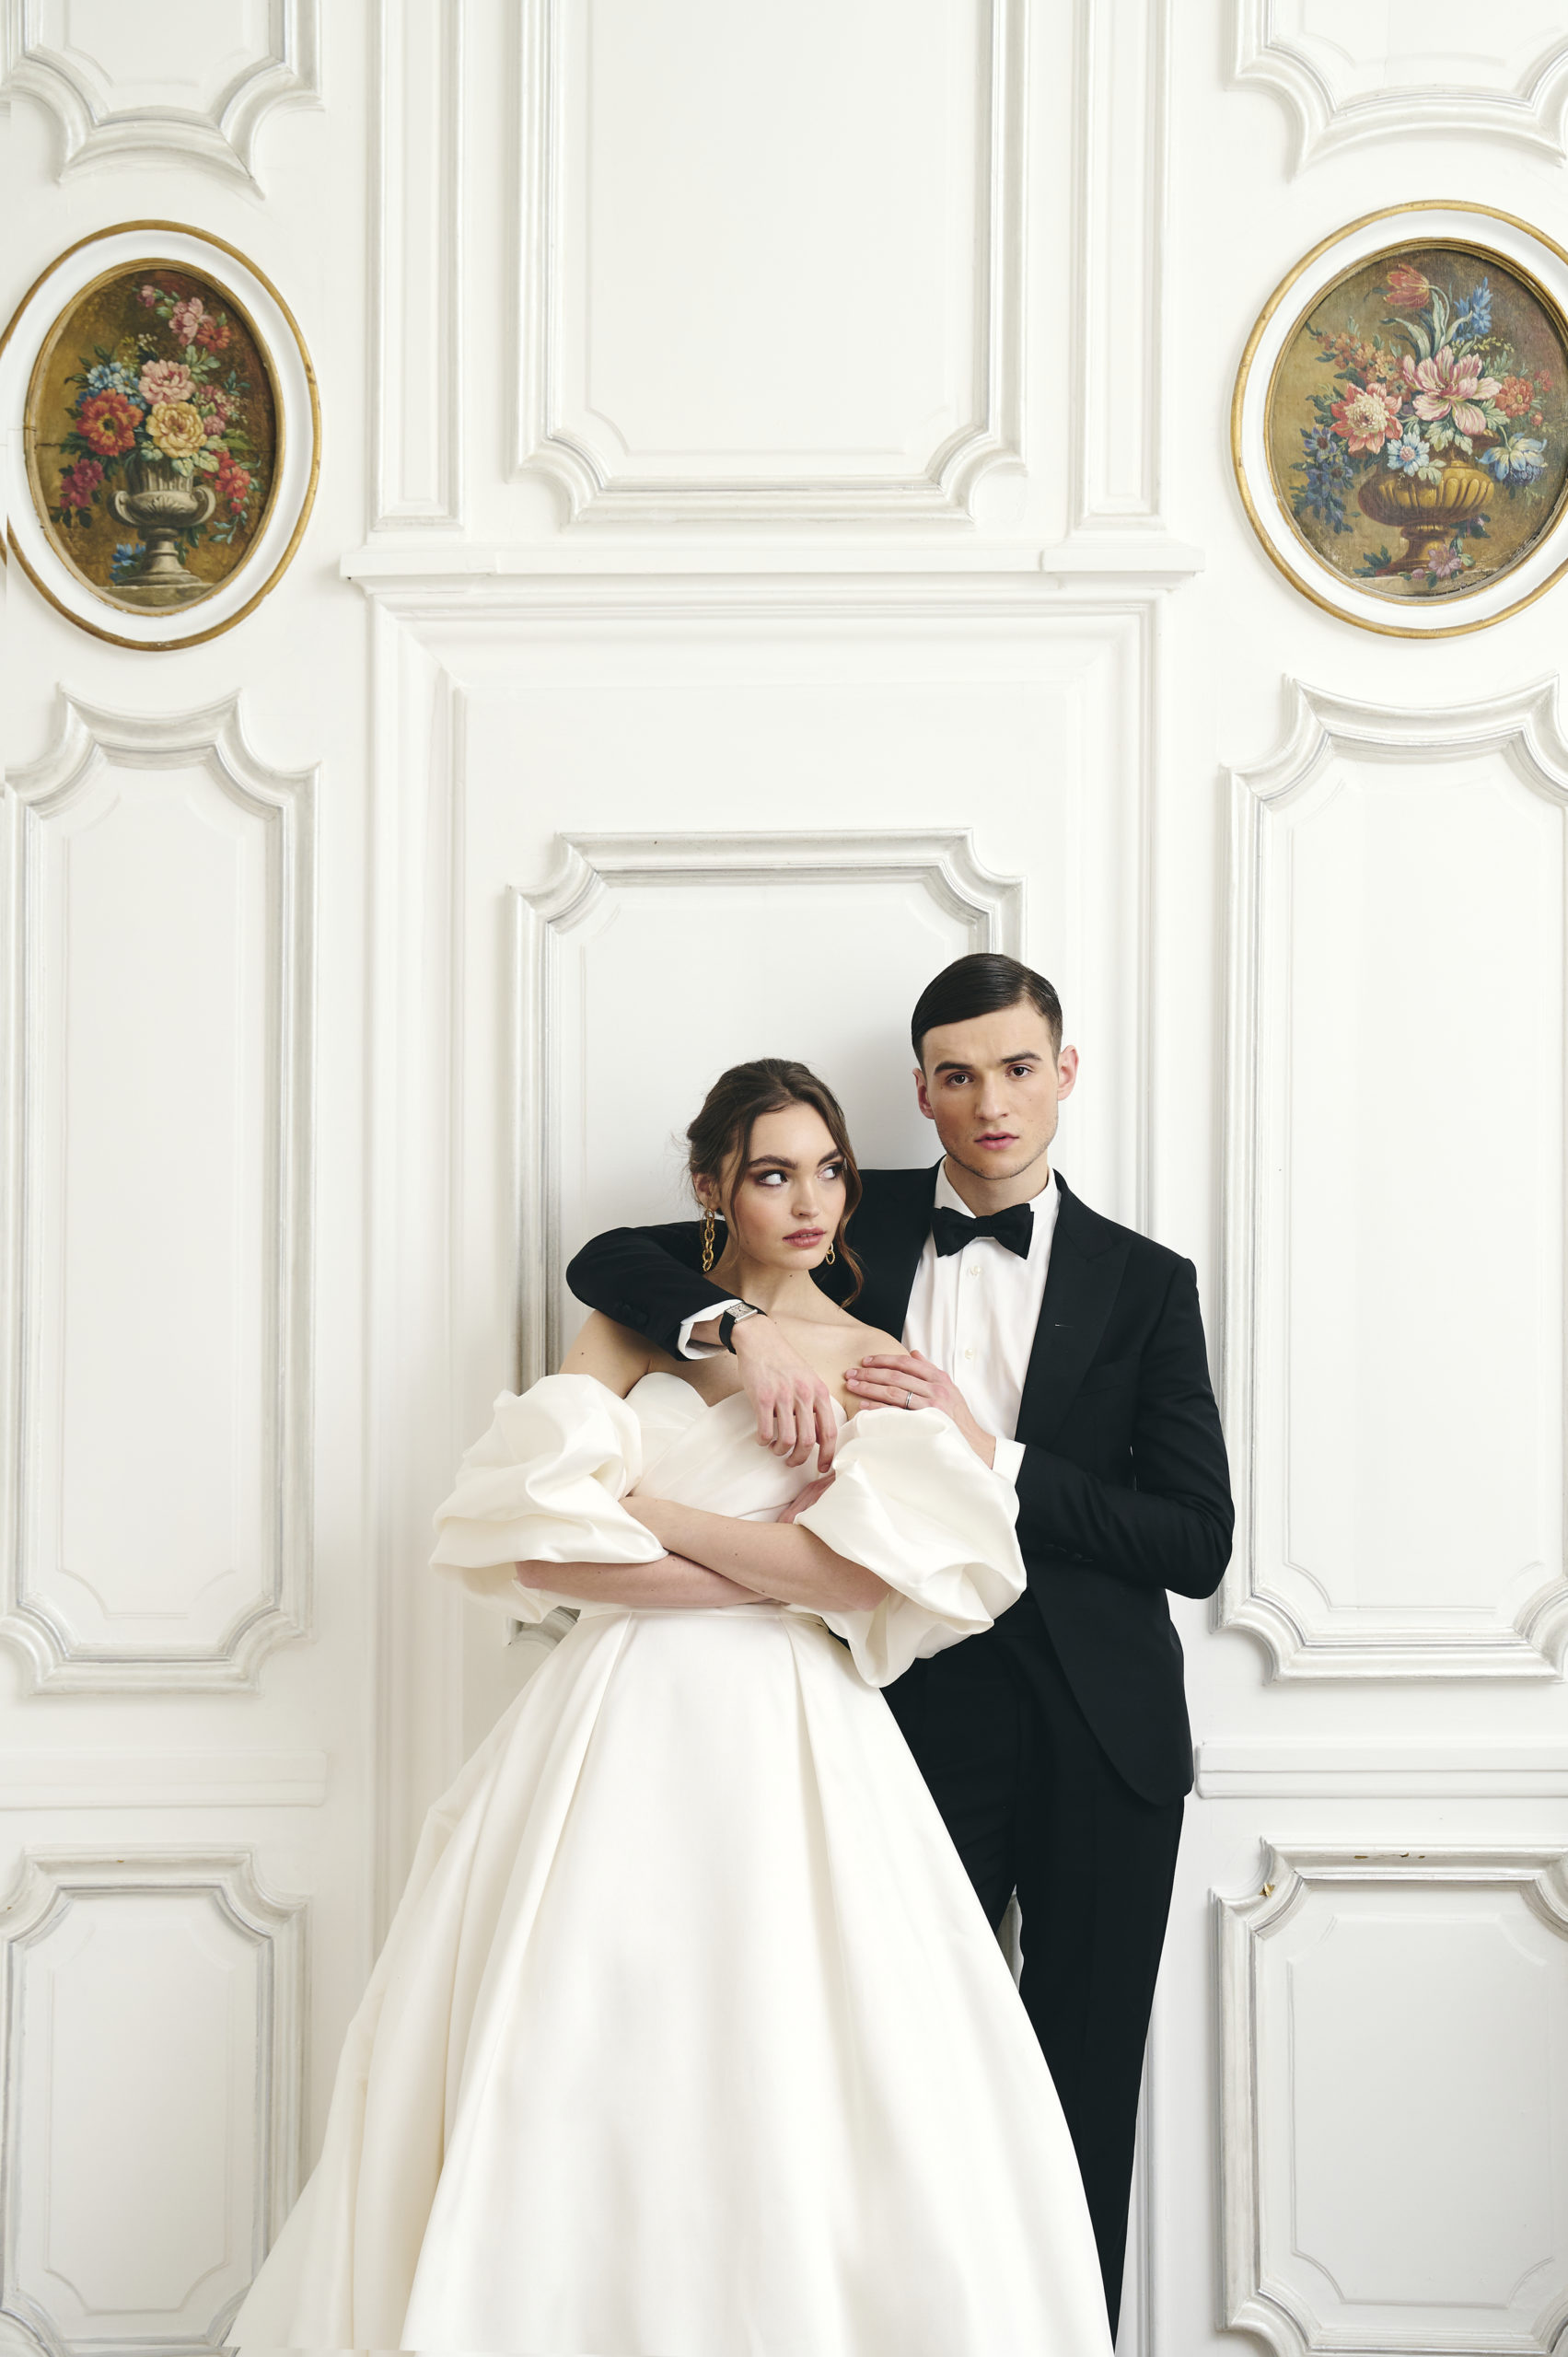 Mariage élégant et intime dans un Hôtel particulier - Blog Mariage Madame C